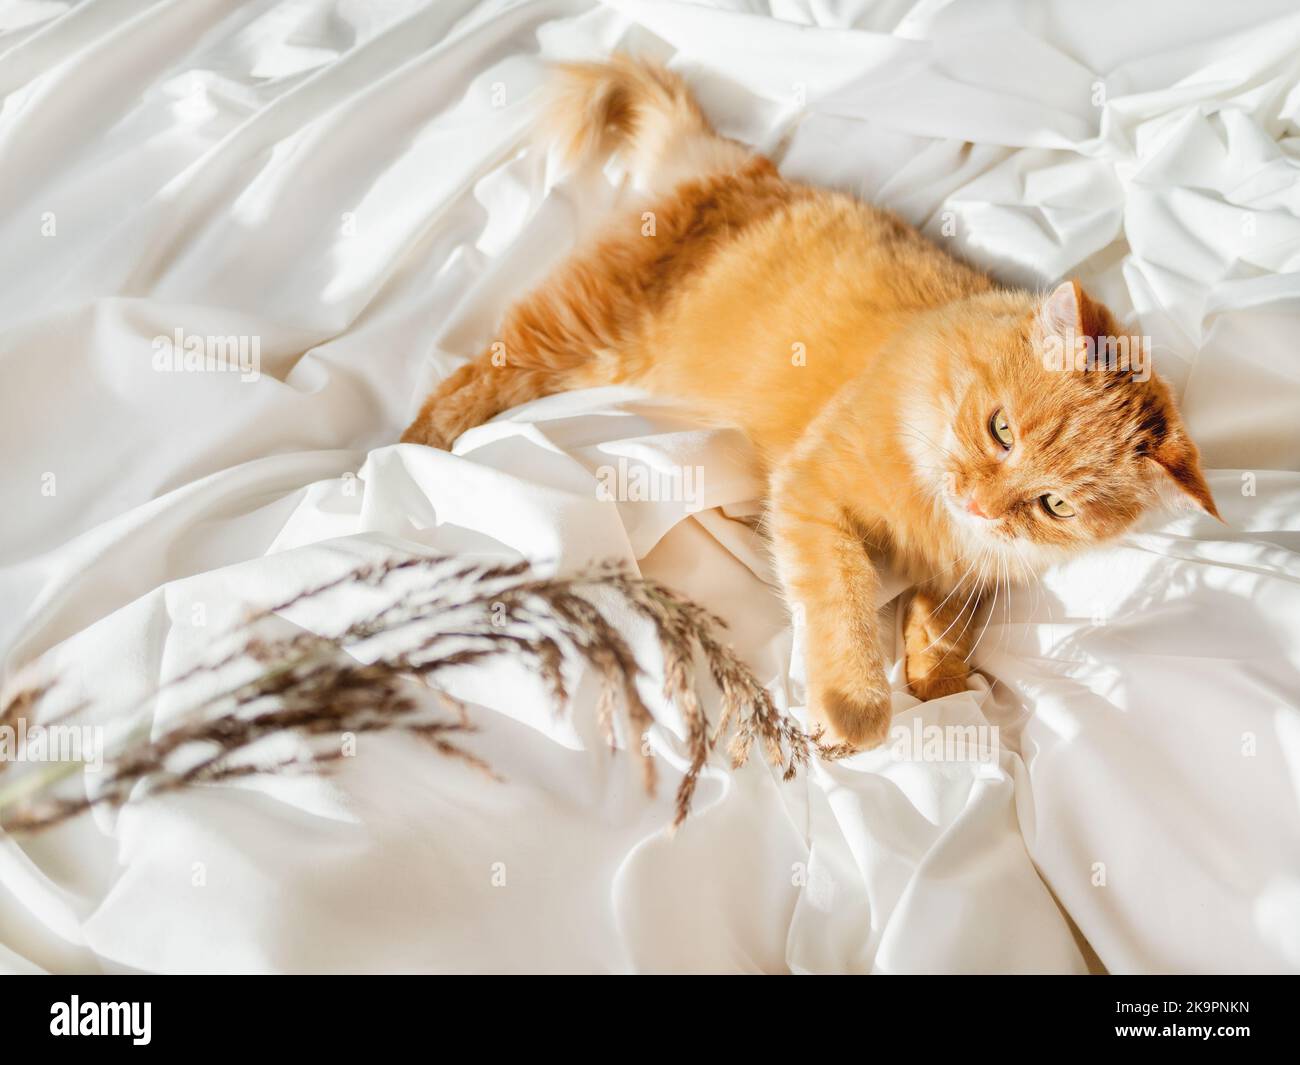 Carino zenzero gatto gioca con erba secca su letto crumpled. Mattina notte a letto con animale domestico allegro. Soffice animale domestico su lenzuolo bianco. Casa accogliente. Foto Stock